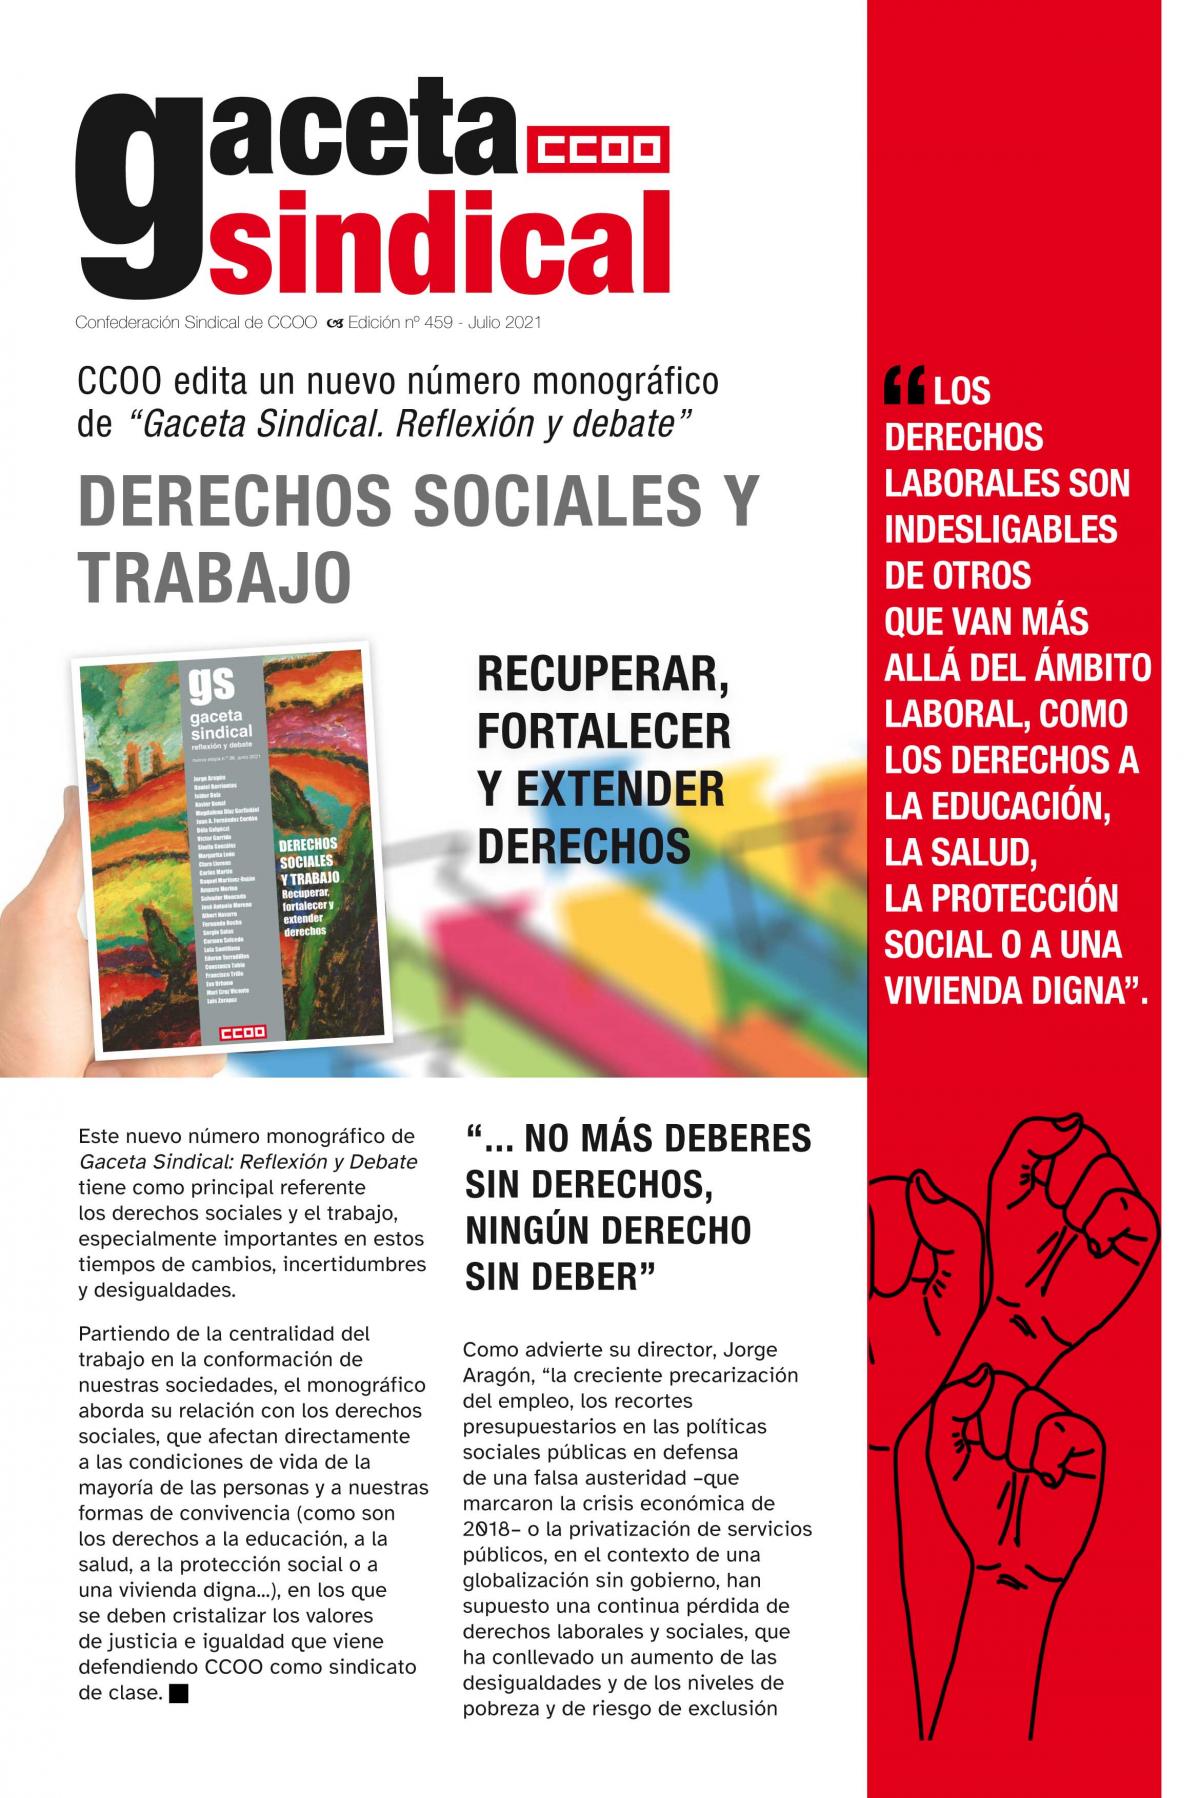 CCOO edita un nuevo número monográfico de “Gaceta Sindical. Reflexión y debate”